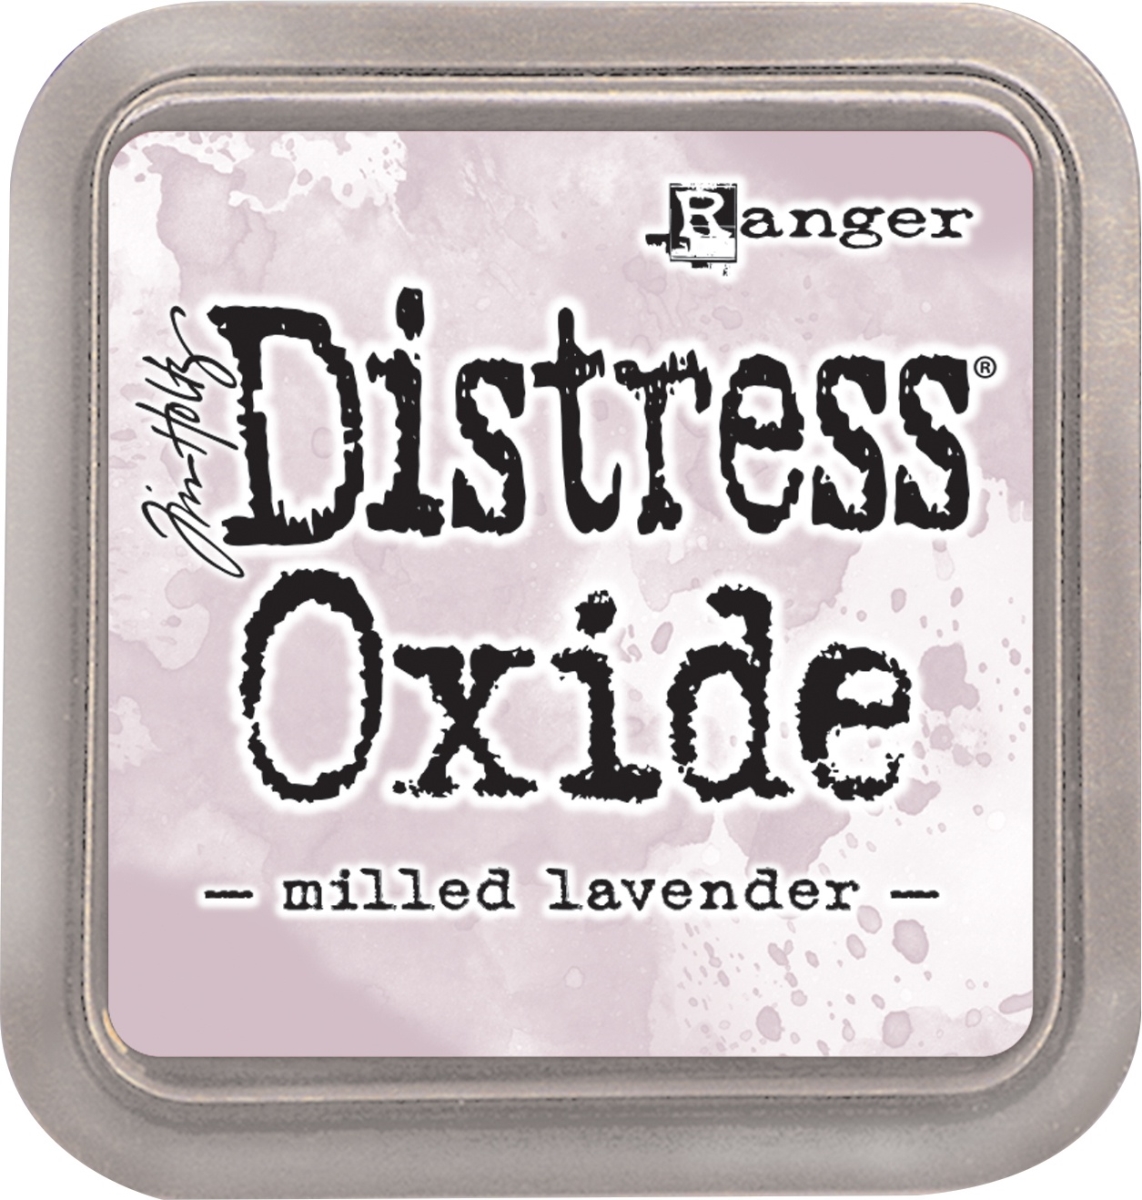 Tdo-56065 Tim Holtz Distress Oxides Ink Pad, Milled Lavender